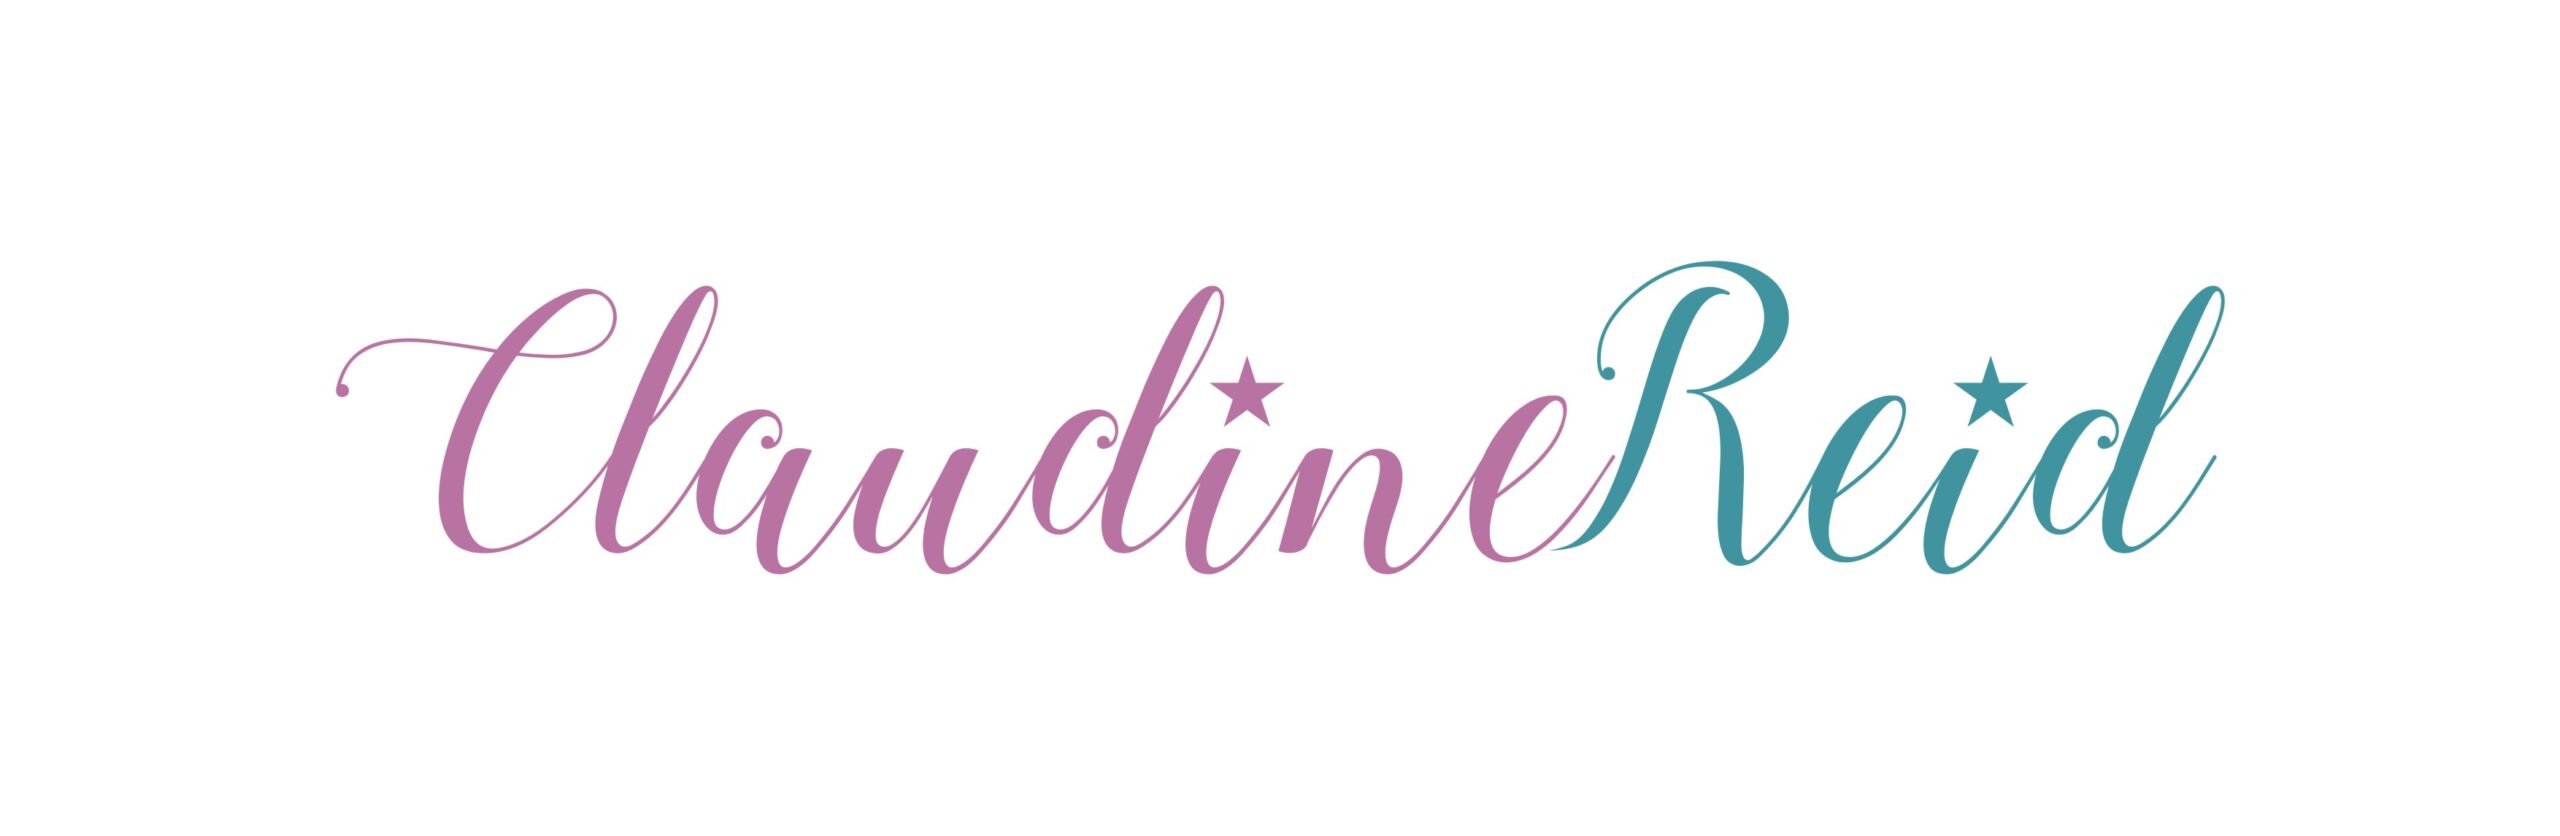 logo for claudine reid